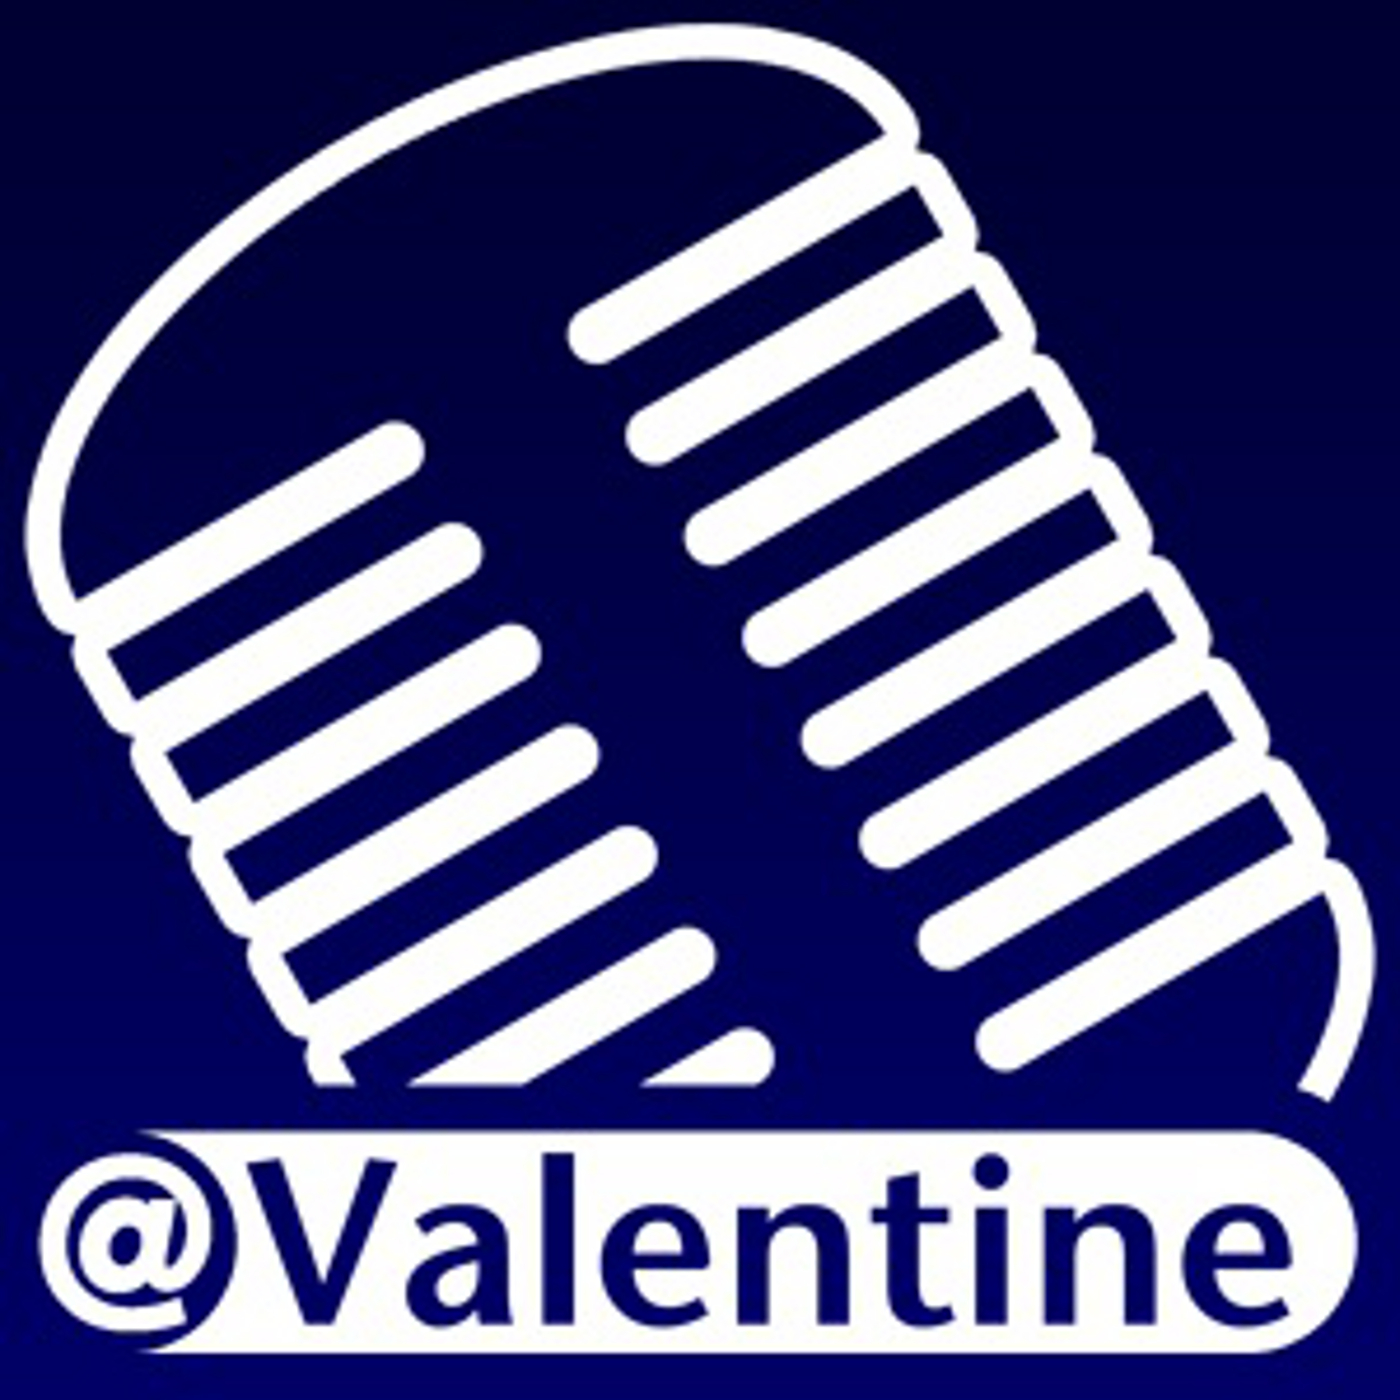 ValentineCast Episode #223 - Continuous